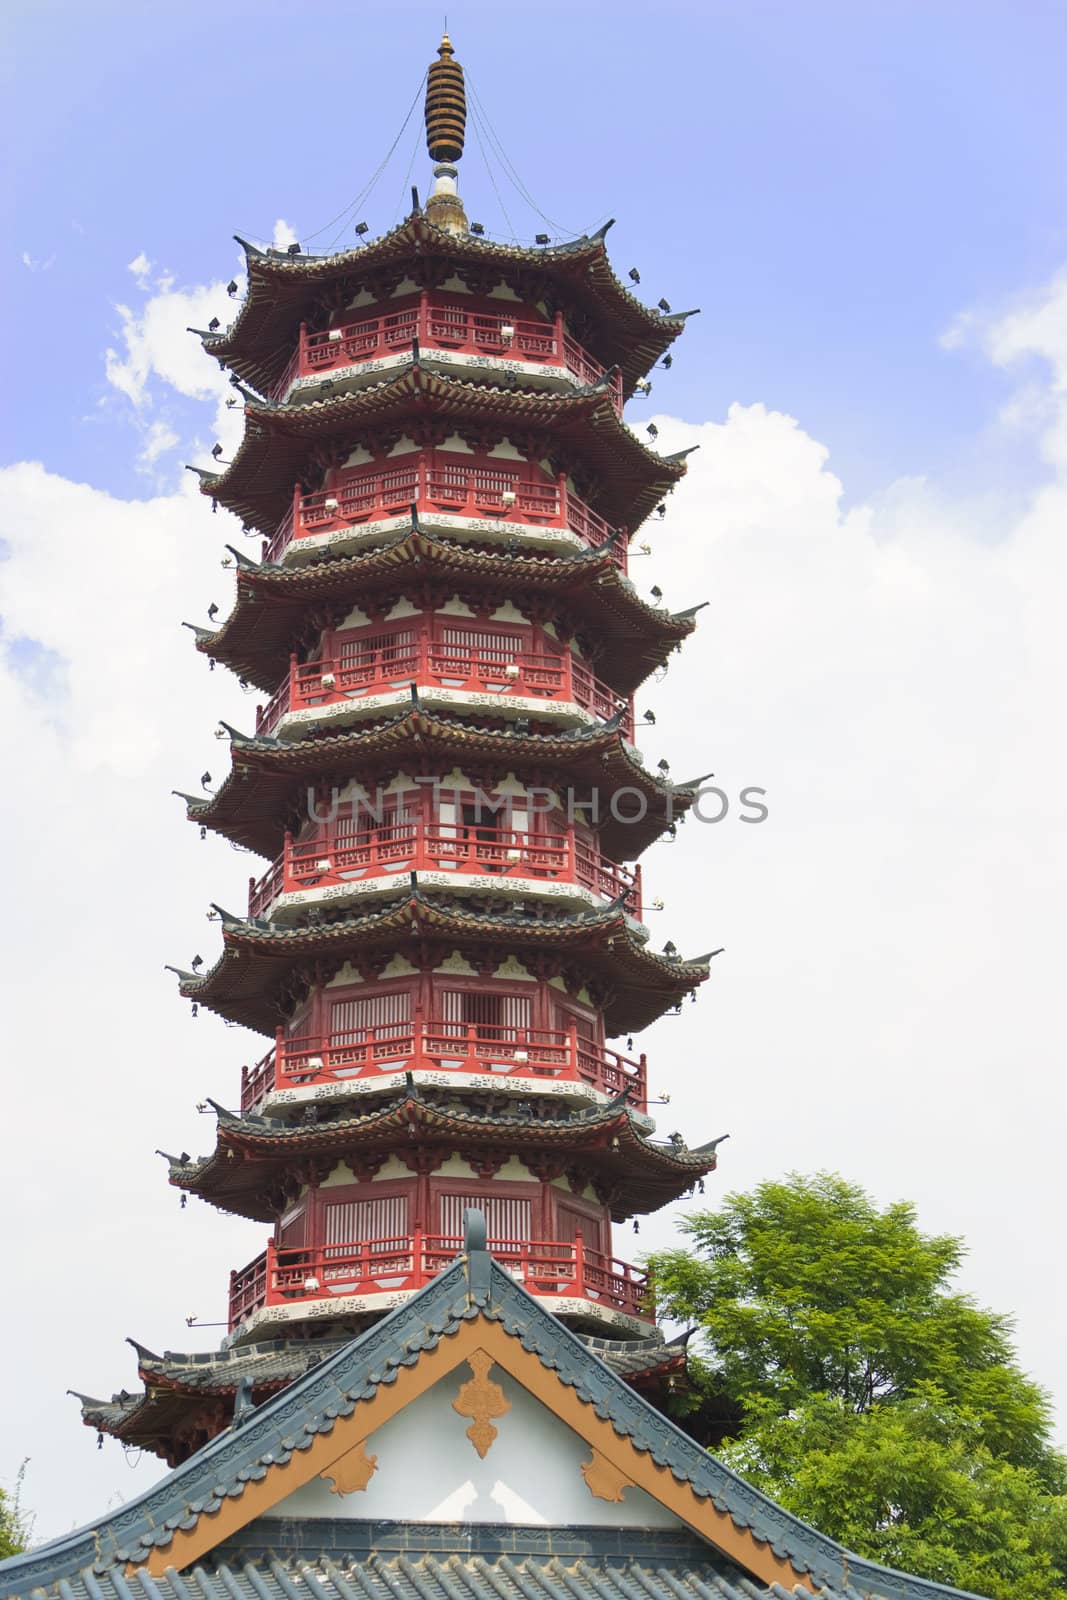 Mulong Lake Pagoda, Guilin, China by shariffc